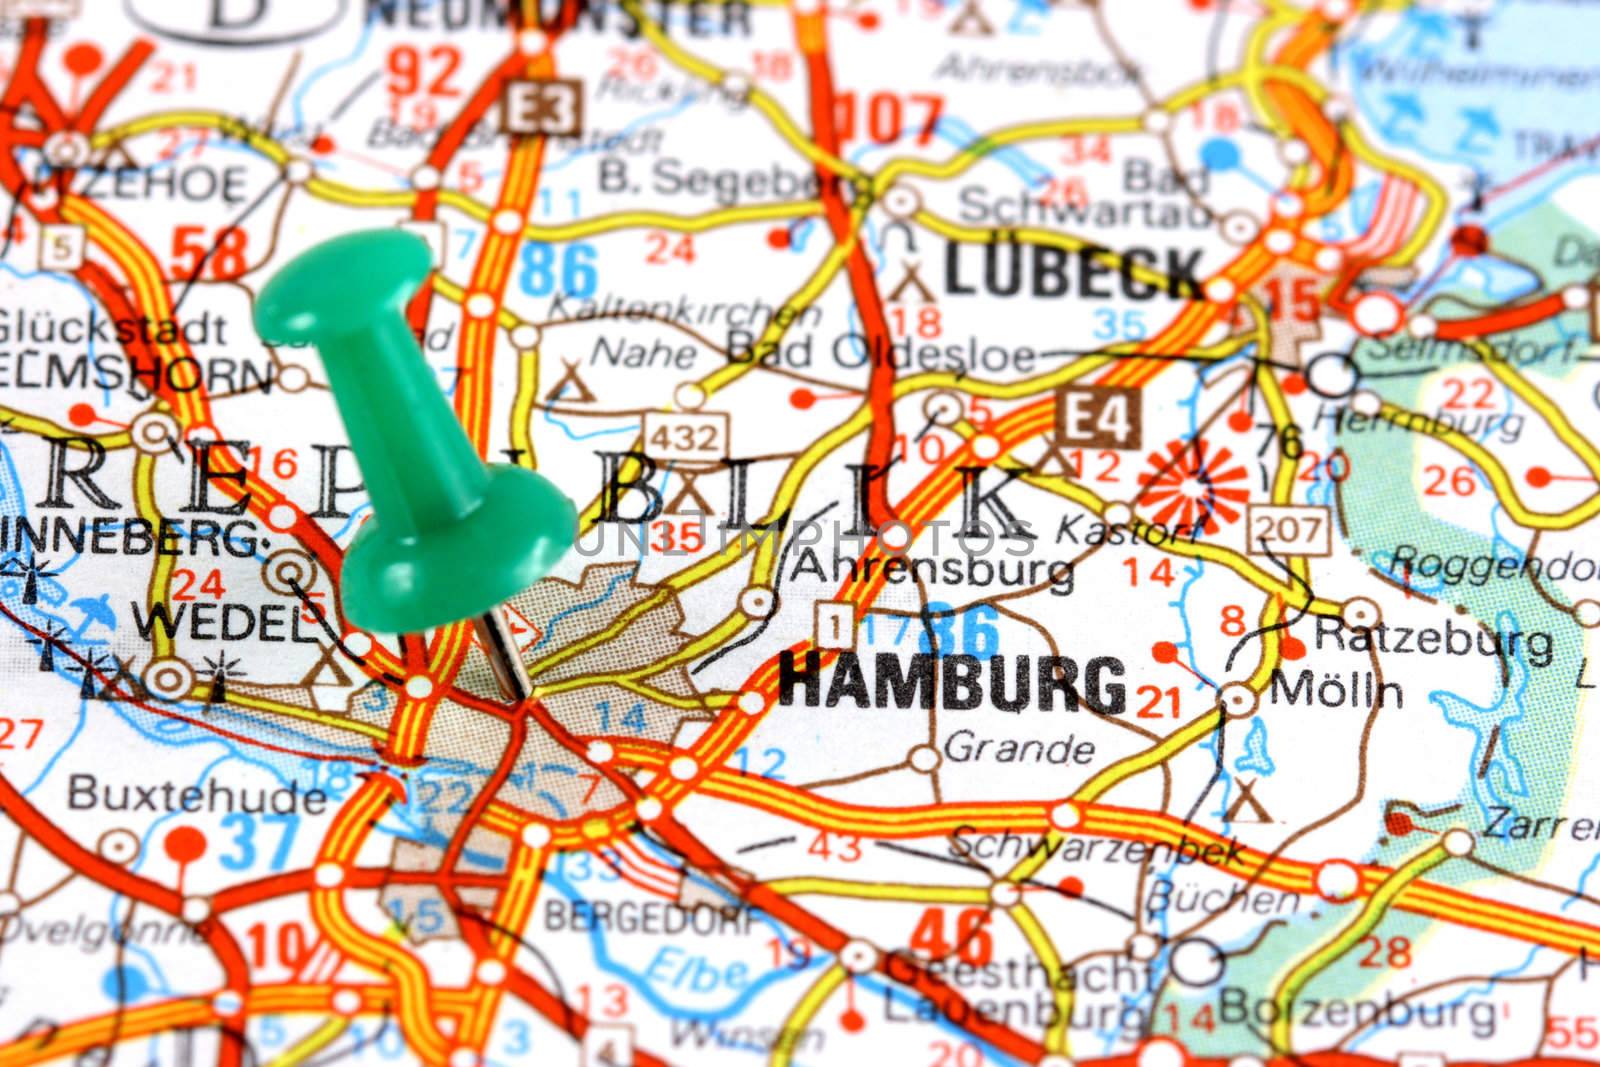 Hamburg on map by tupungato